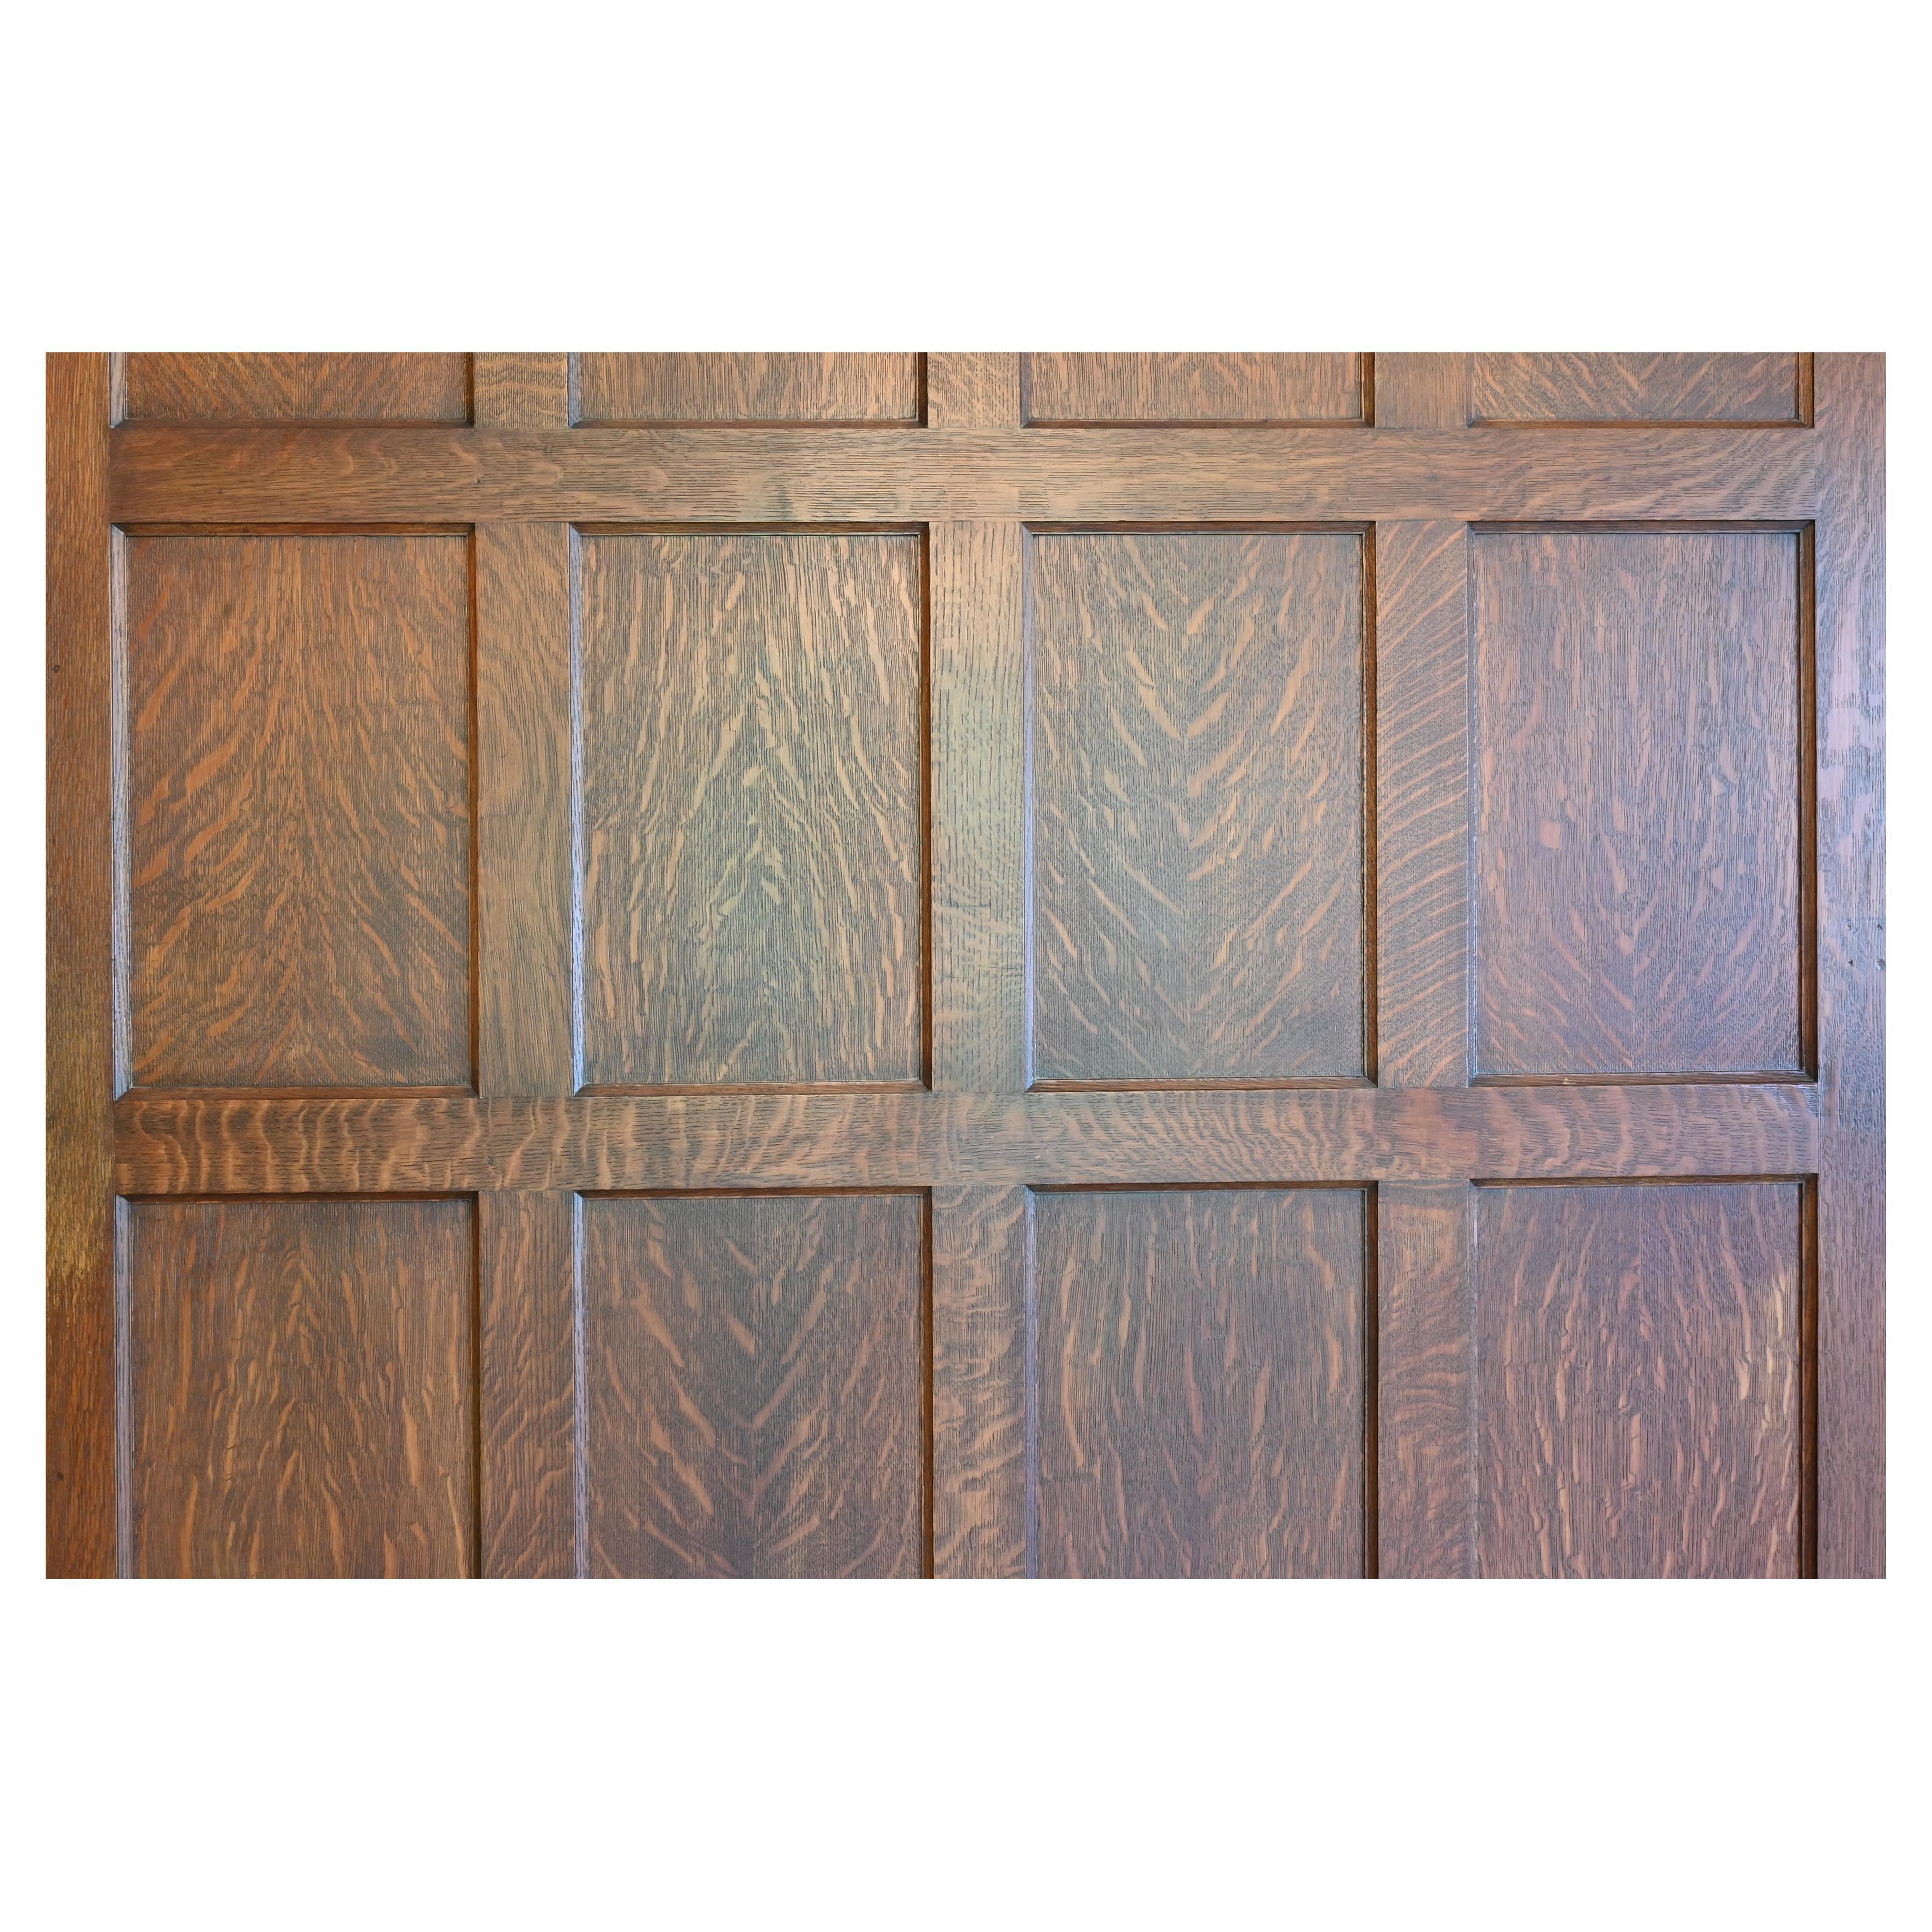 Tiger Oak 'Quarter Sawn' 1929 Paneled Room & Doors Complete For Sale